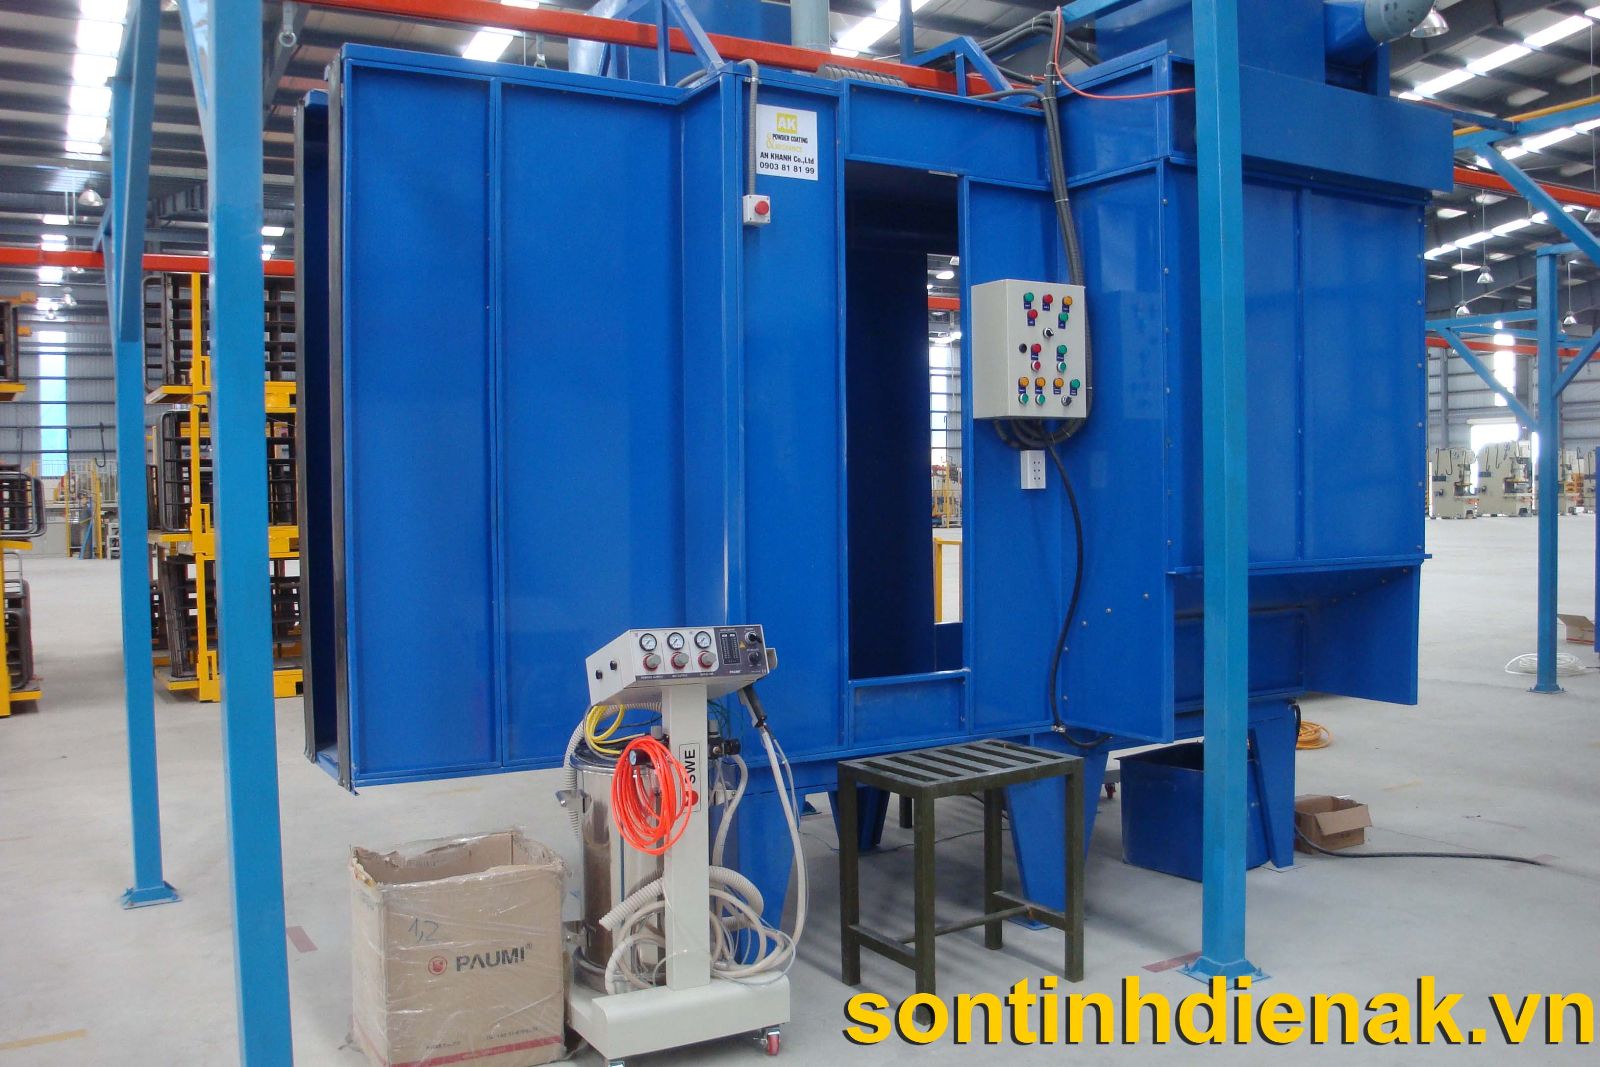 Tổng hợp các loại thiết bị sơn tĩnh điện do An Khanh Co.,Ltd cung cấp